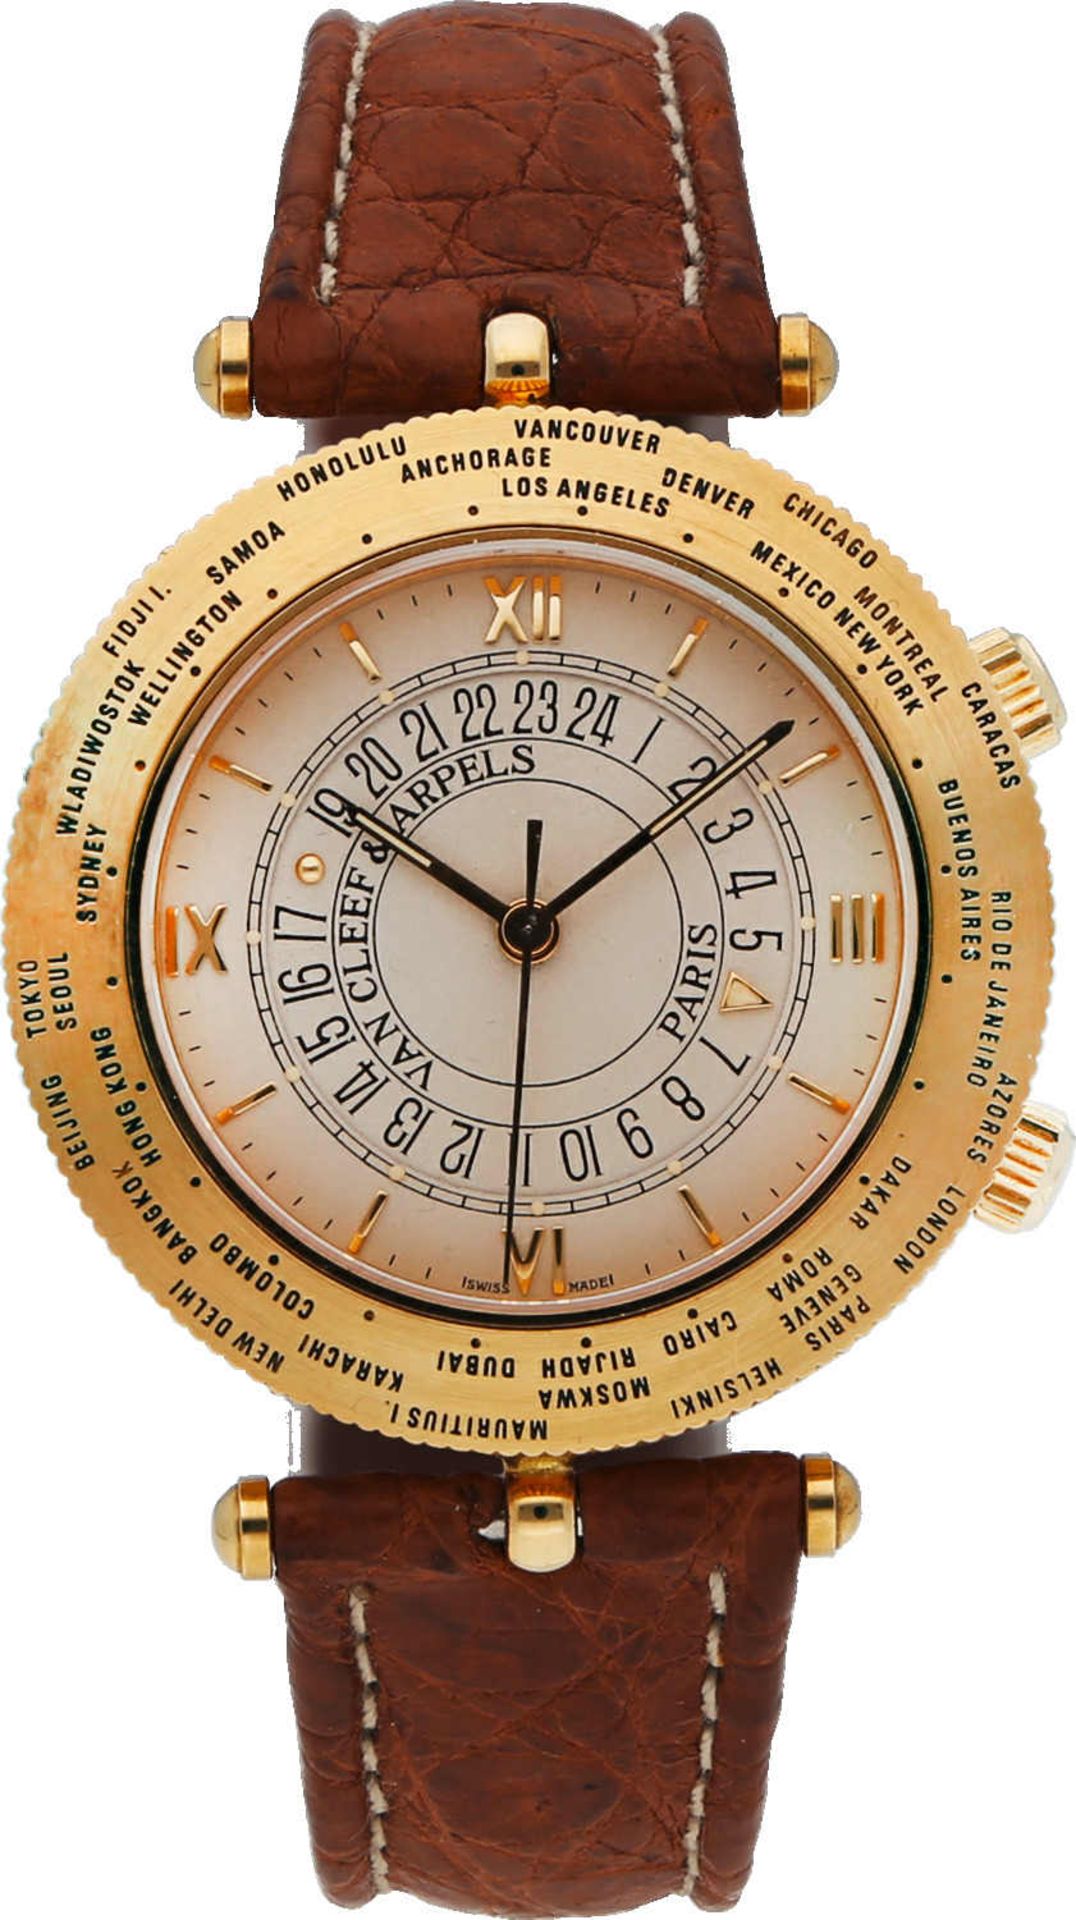 VAN CLEEF & ARPELS Traveler World Time Watch Nr. 15, Gelbgold 18K, Referenz 44825, Durchmesser 36